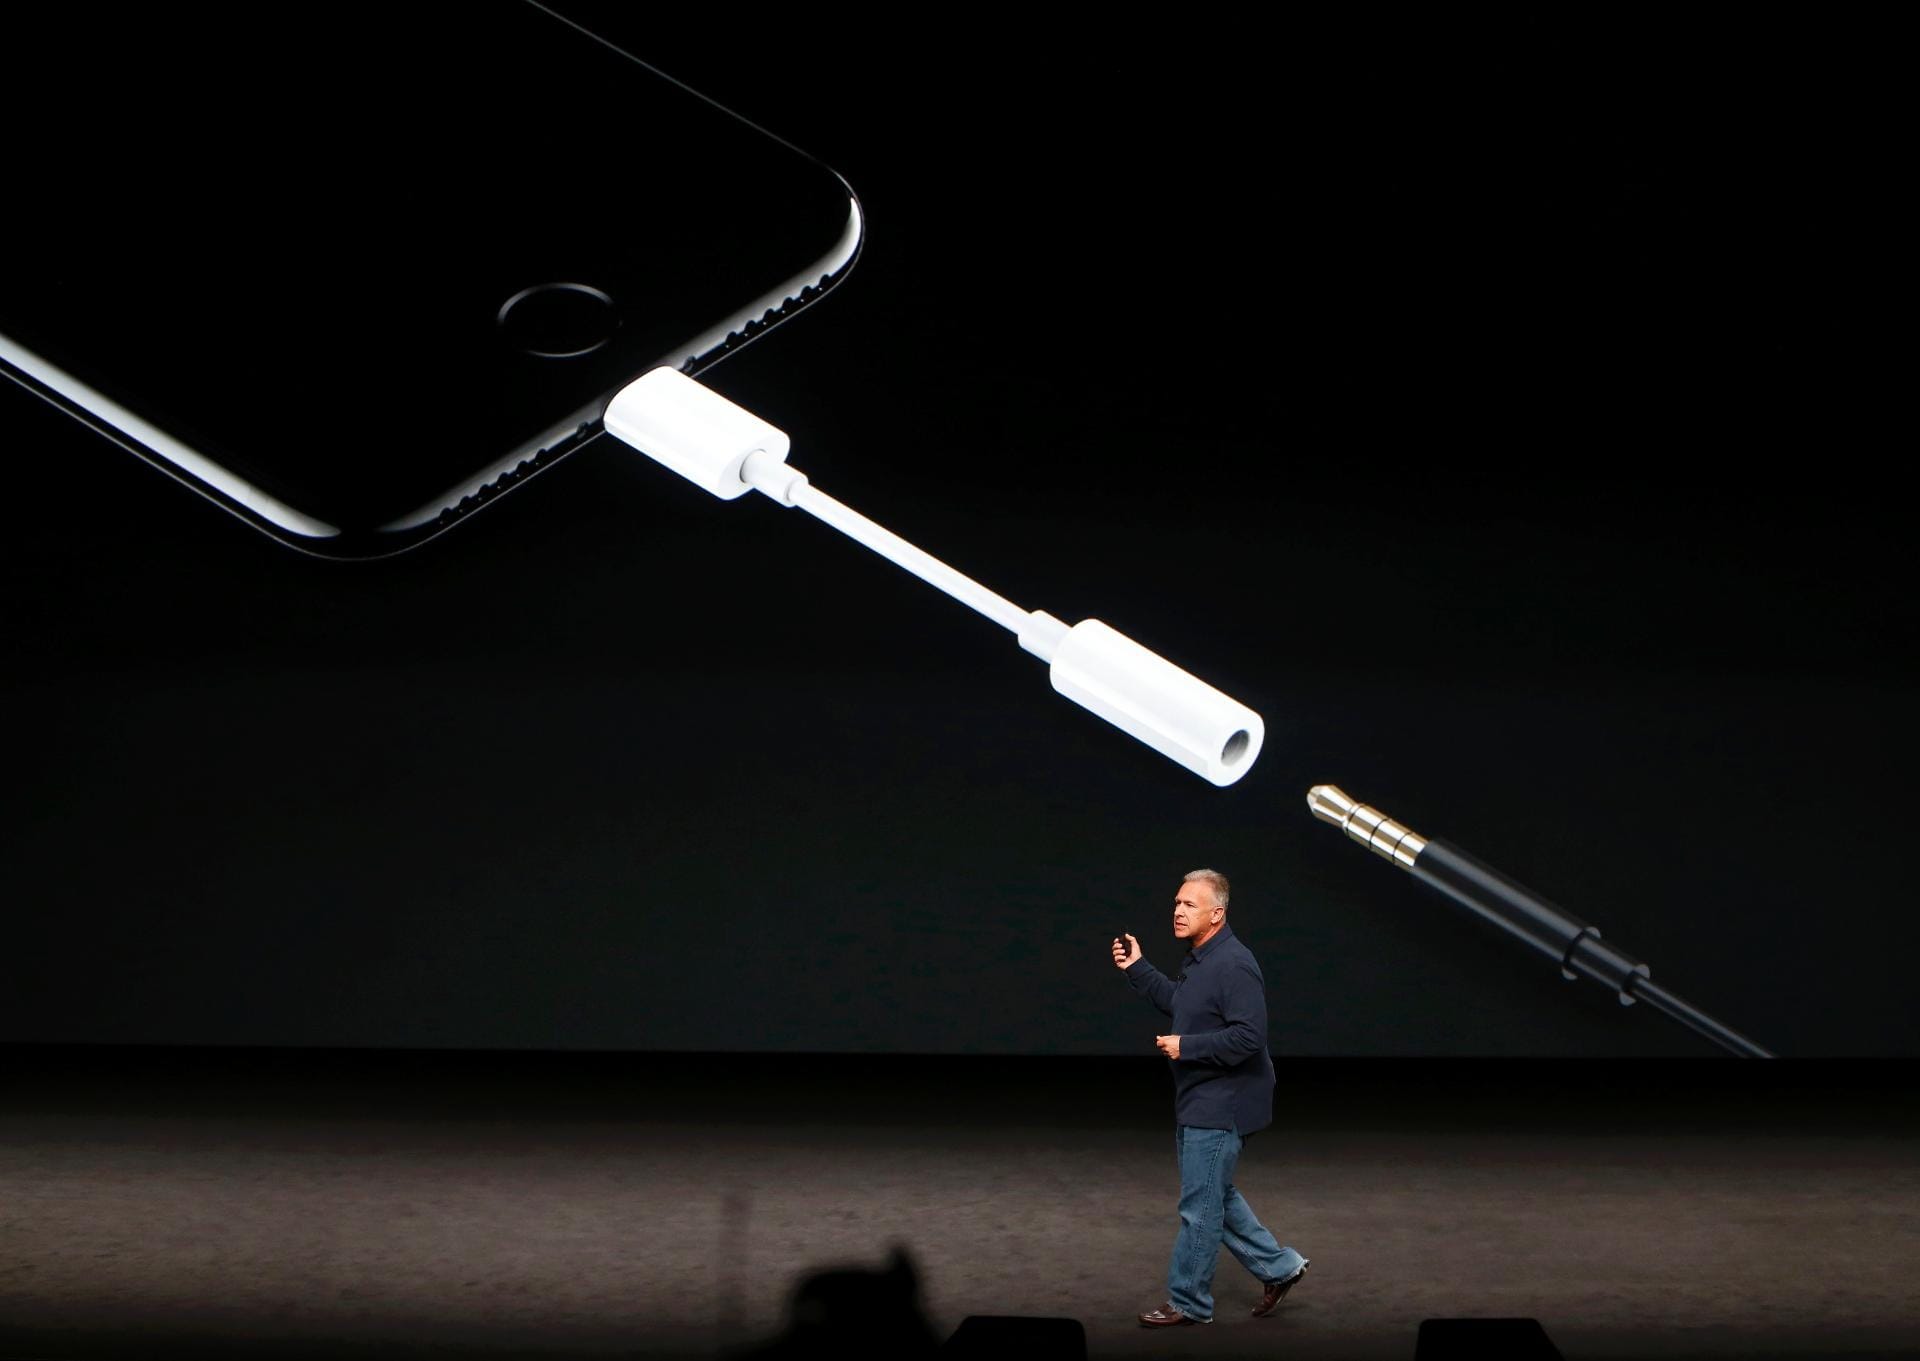 Um die Nutzer herkömmlicher Kopfhörer nicht zu verprellen, legt Apple einen Adapter bei, mit dem der Lightning-Anschluss dann als Klinkenbuchse dient.